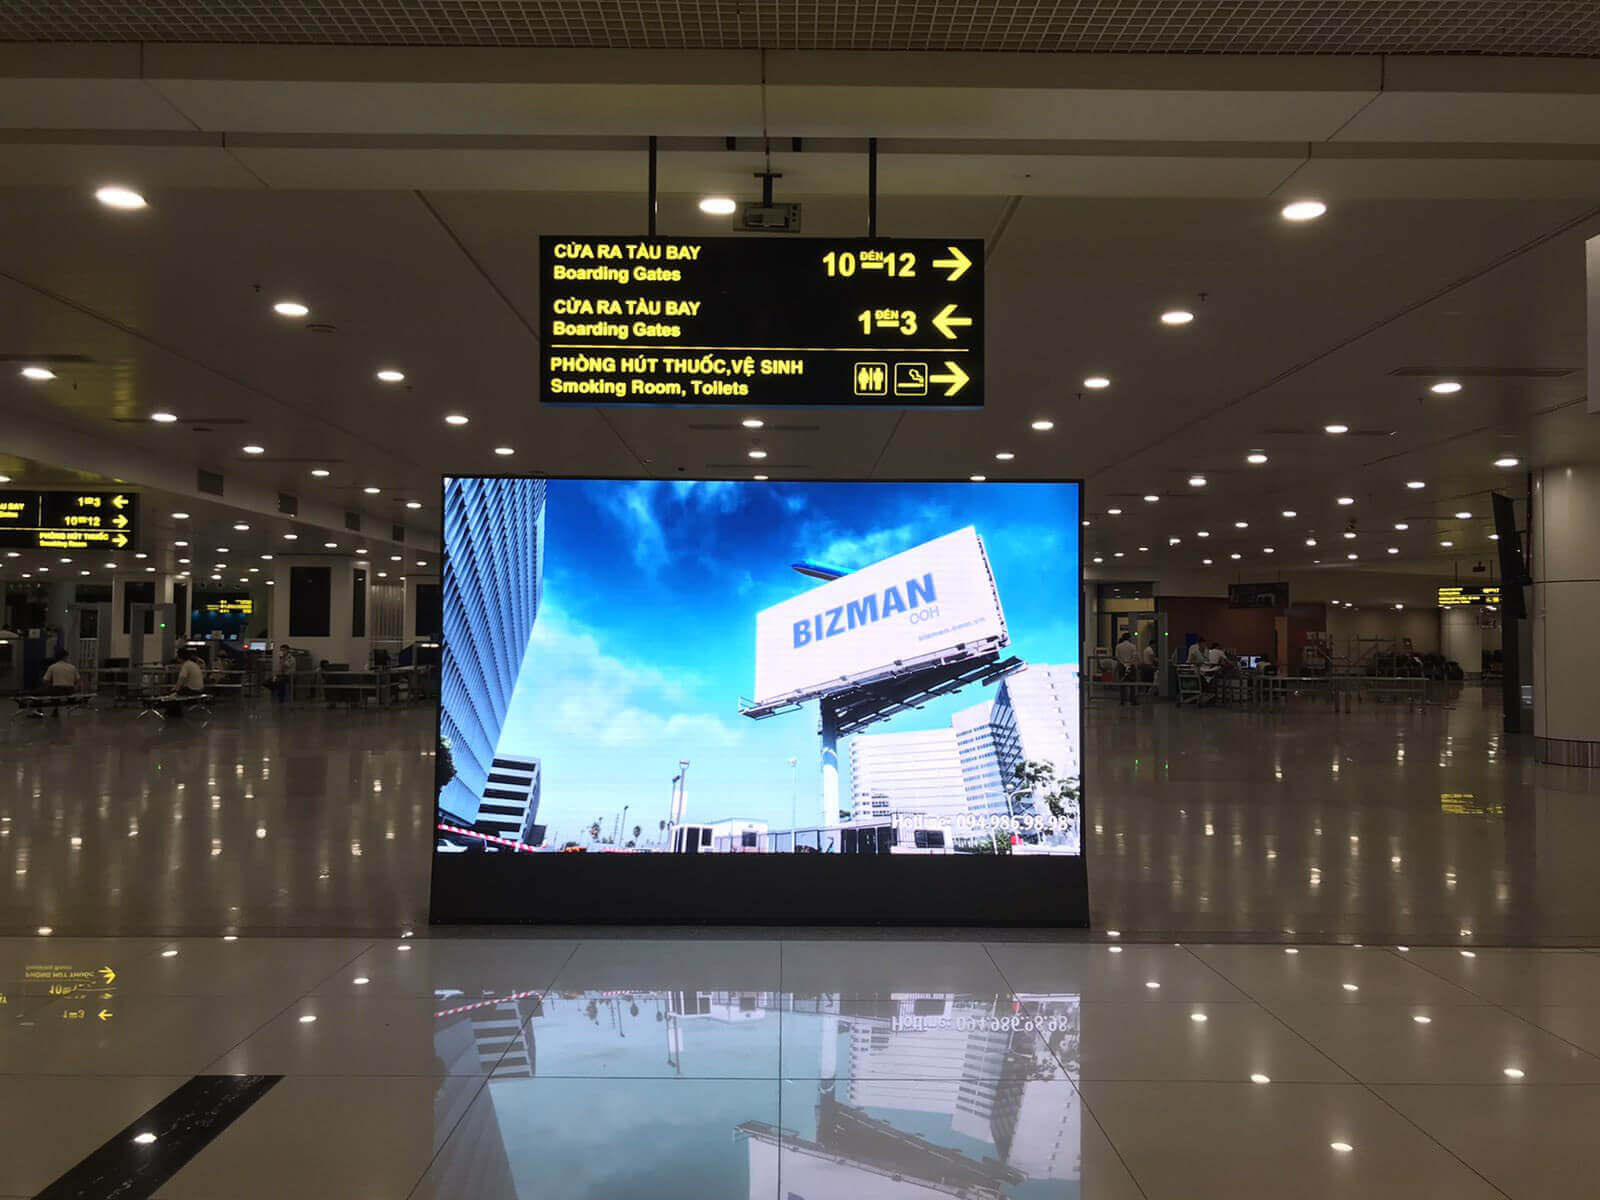 Nghiên cứu về các hình thức quảng cáo sử dụng công nghệ Led, Lcd và Frame tại sân bay